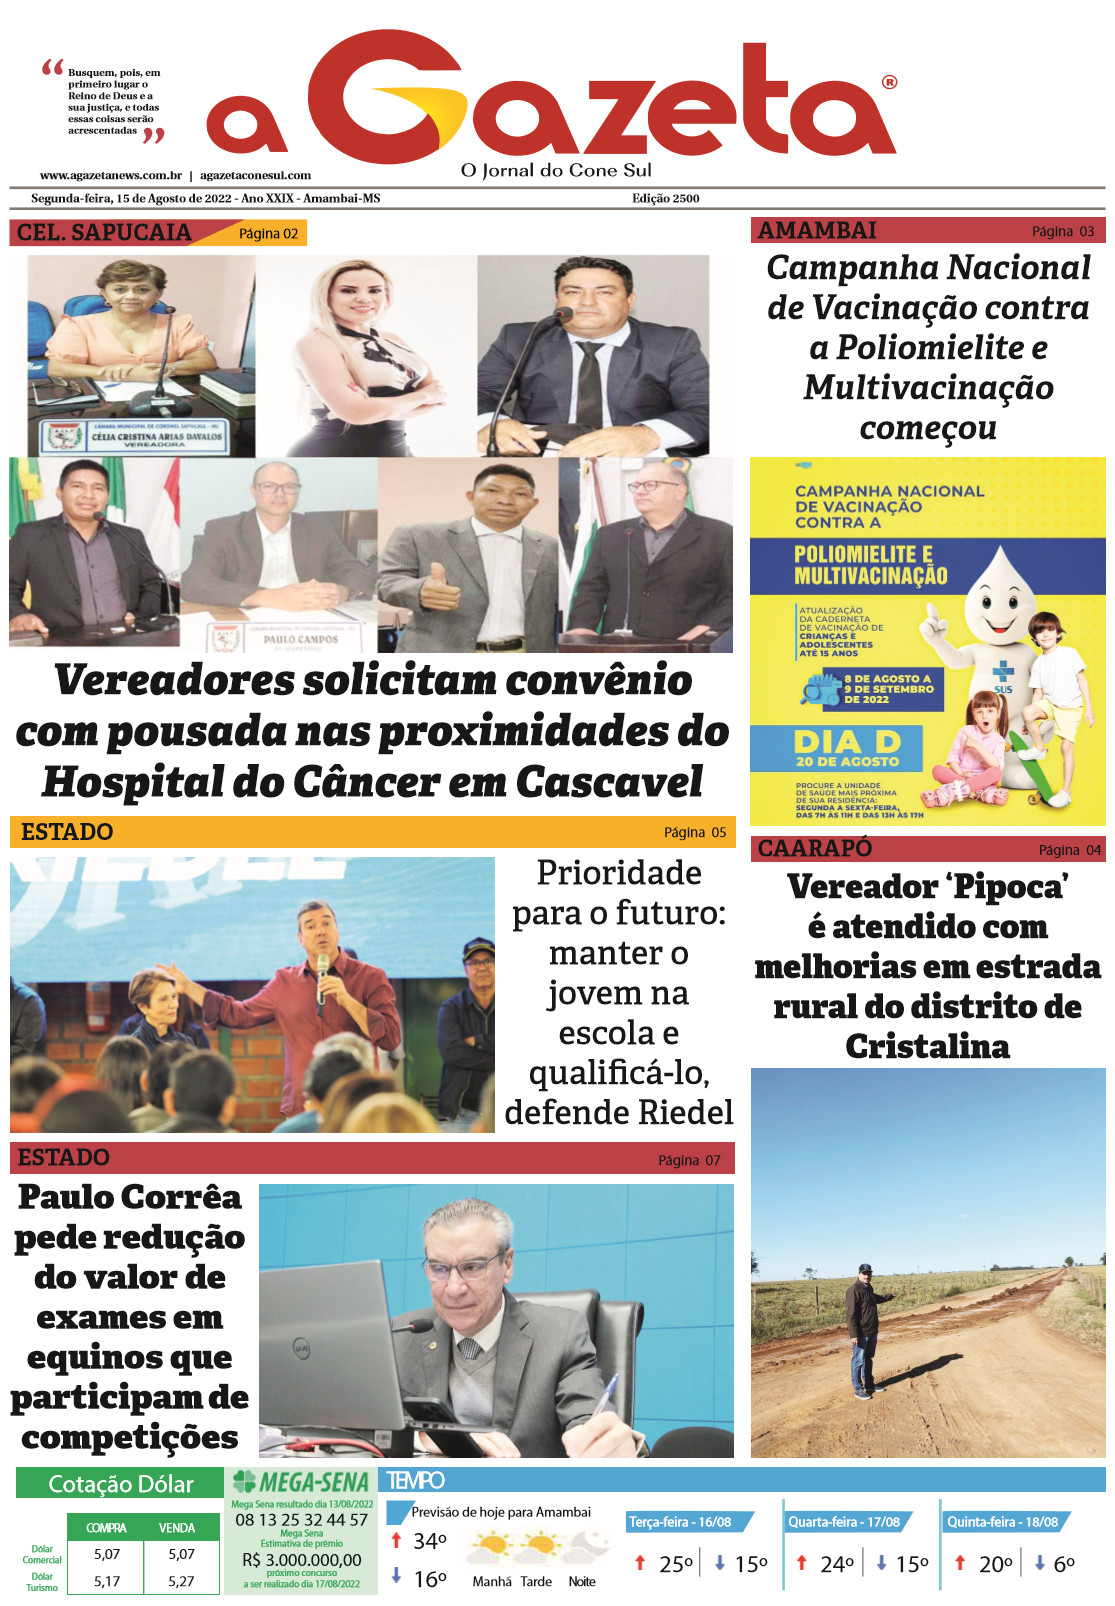 Confira a edição digital do Jornal A Gazeta desta segunda-feira, dia 15